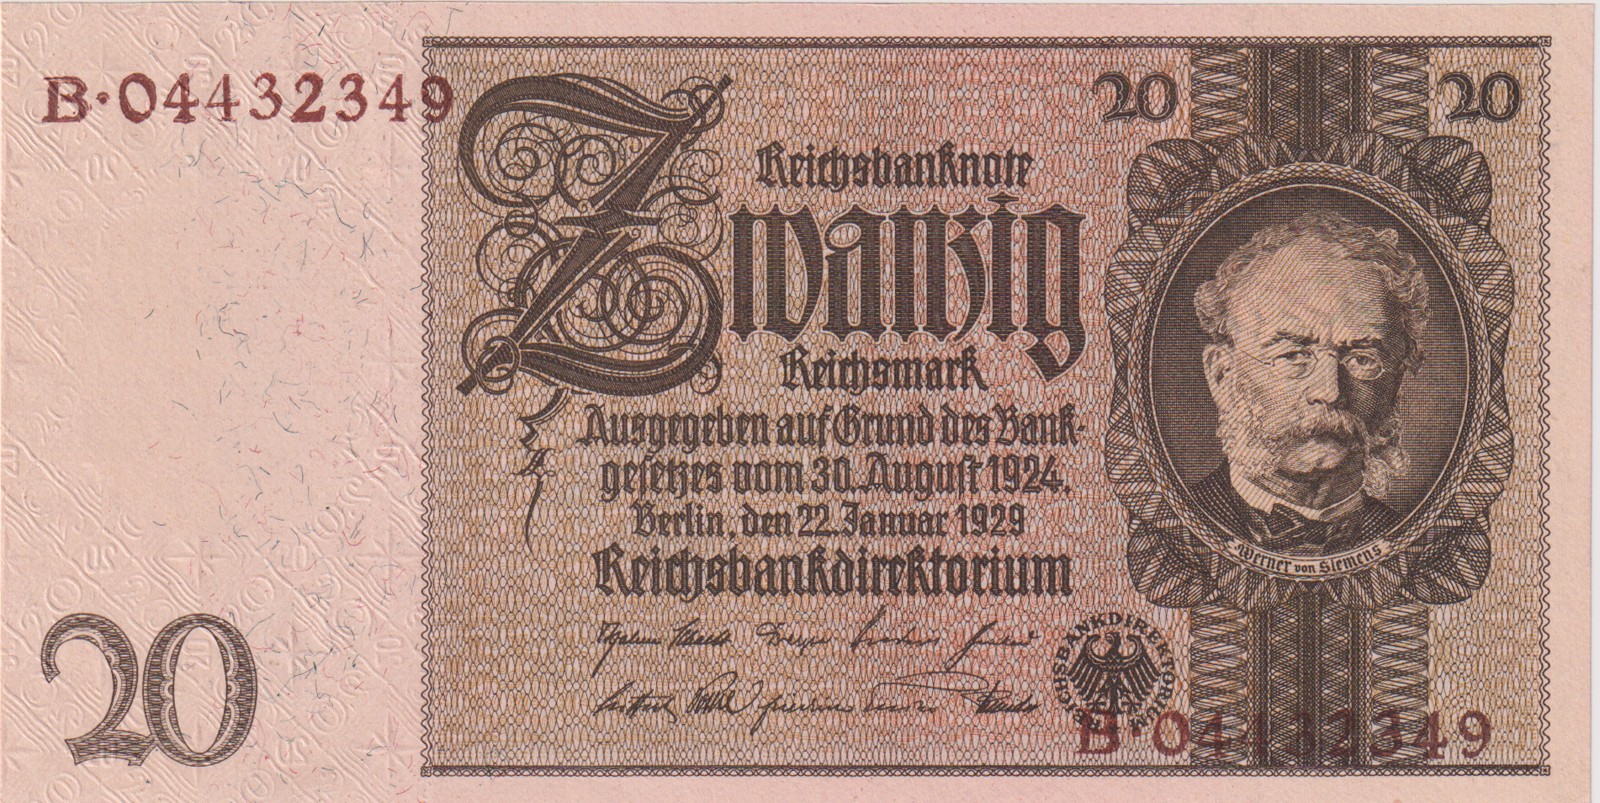 Německá platidla na československém území 1938-45